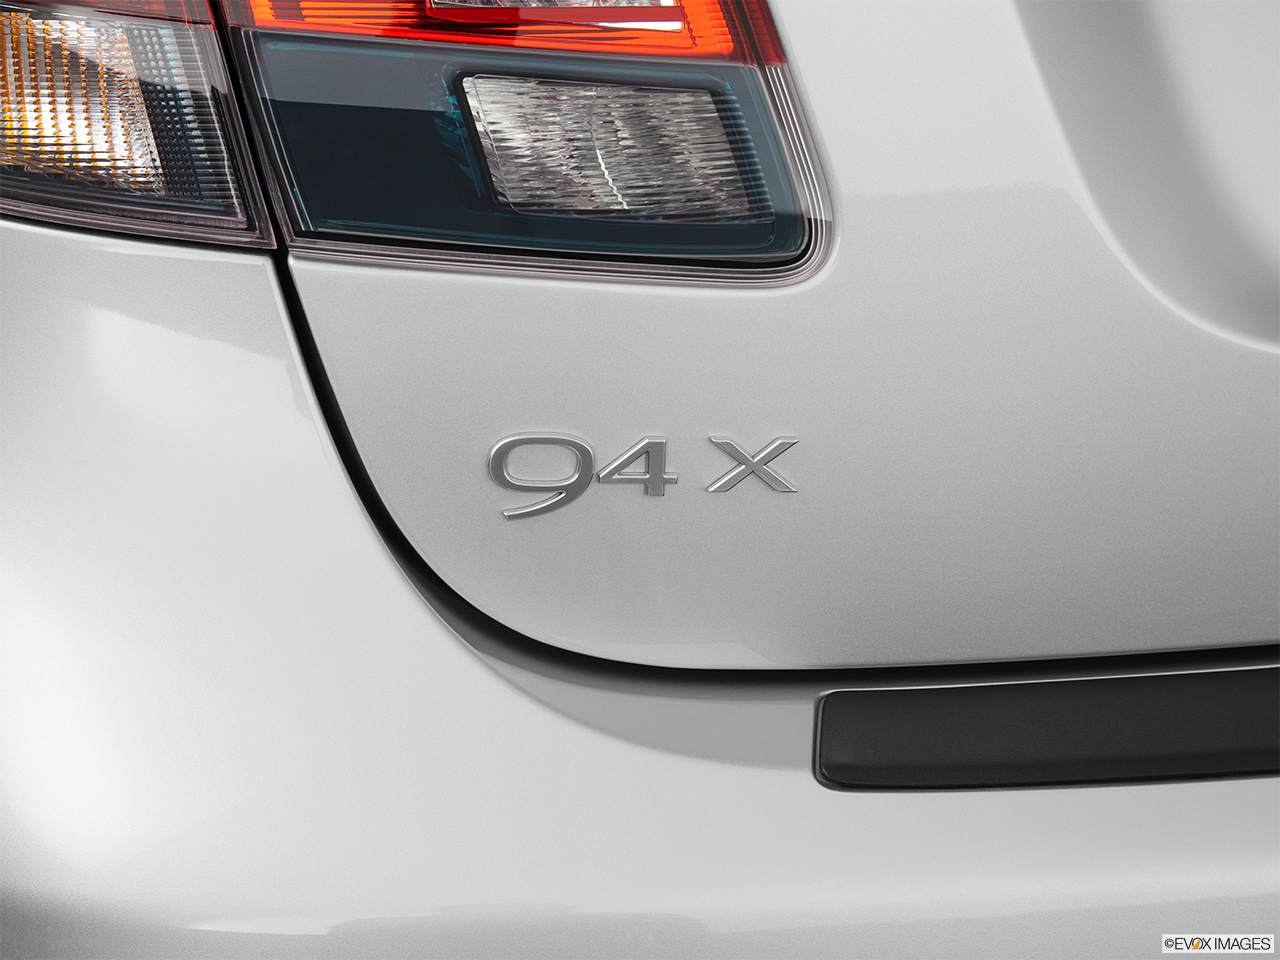 2011 Saab 9-4X 3.0i Rear model badge/emblem 